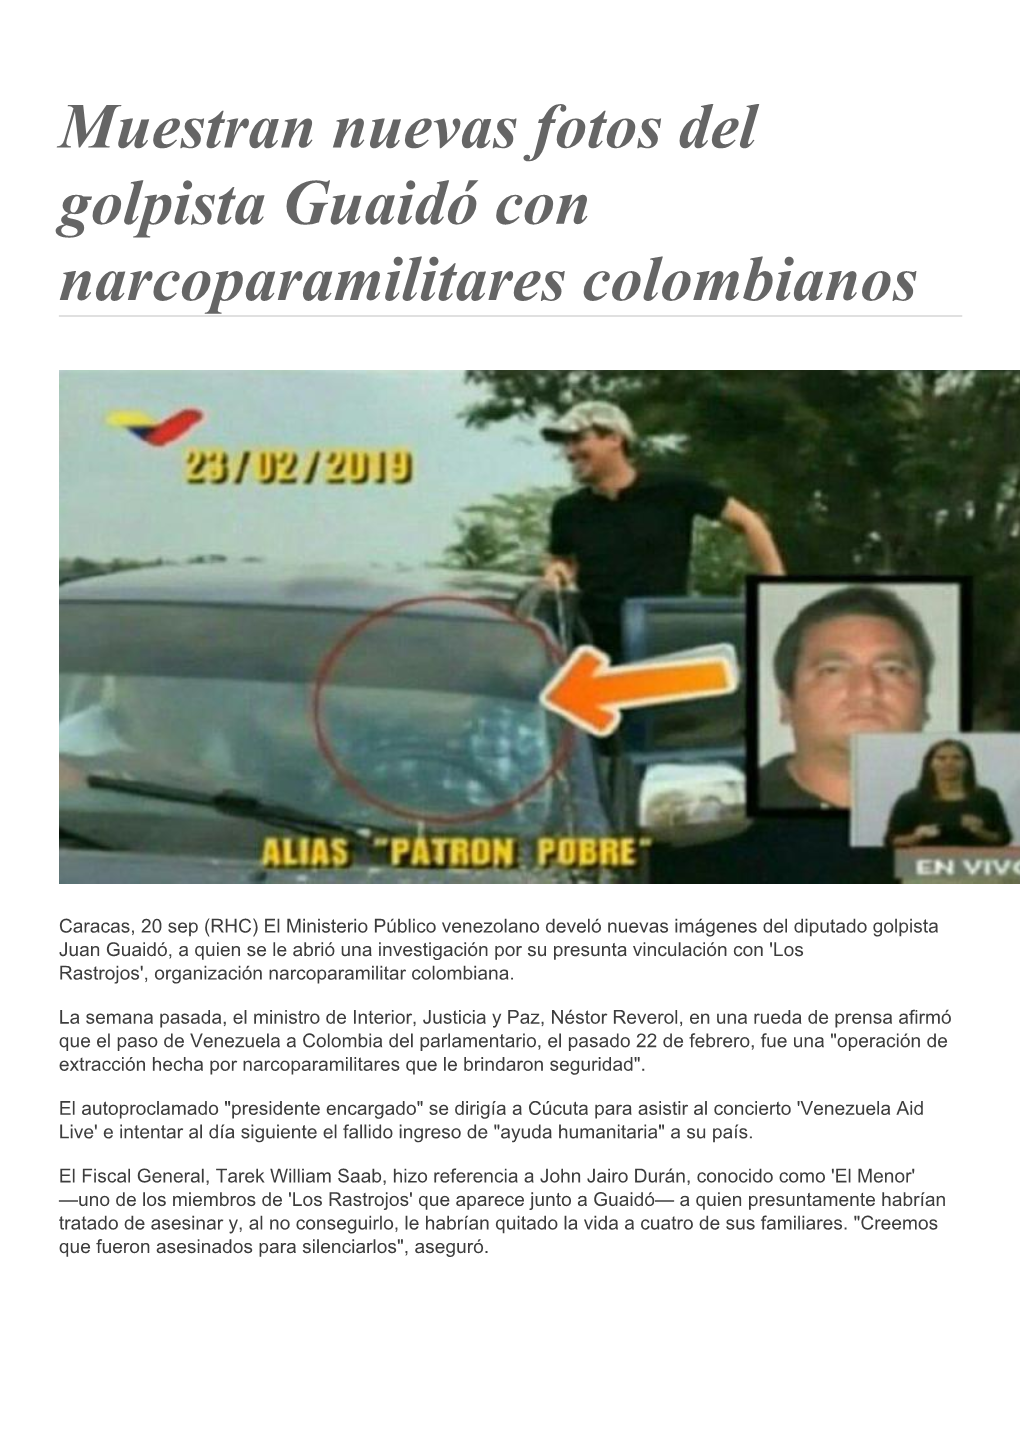 Muestran Nuevas Fotos Del Golpista Guaidó Con Narcoparamilitares Colombianos